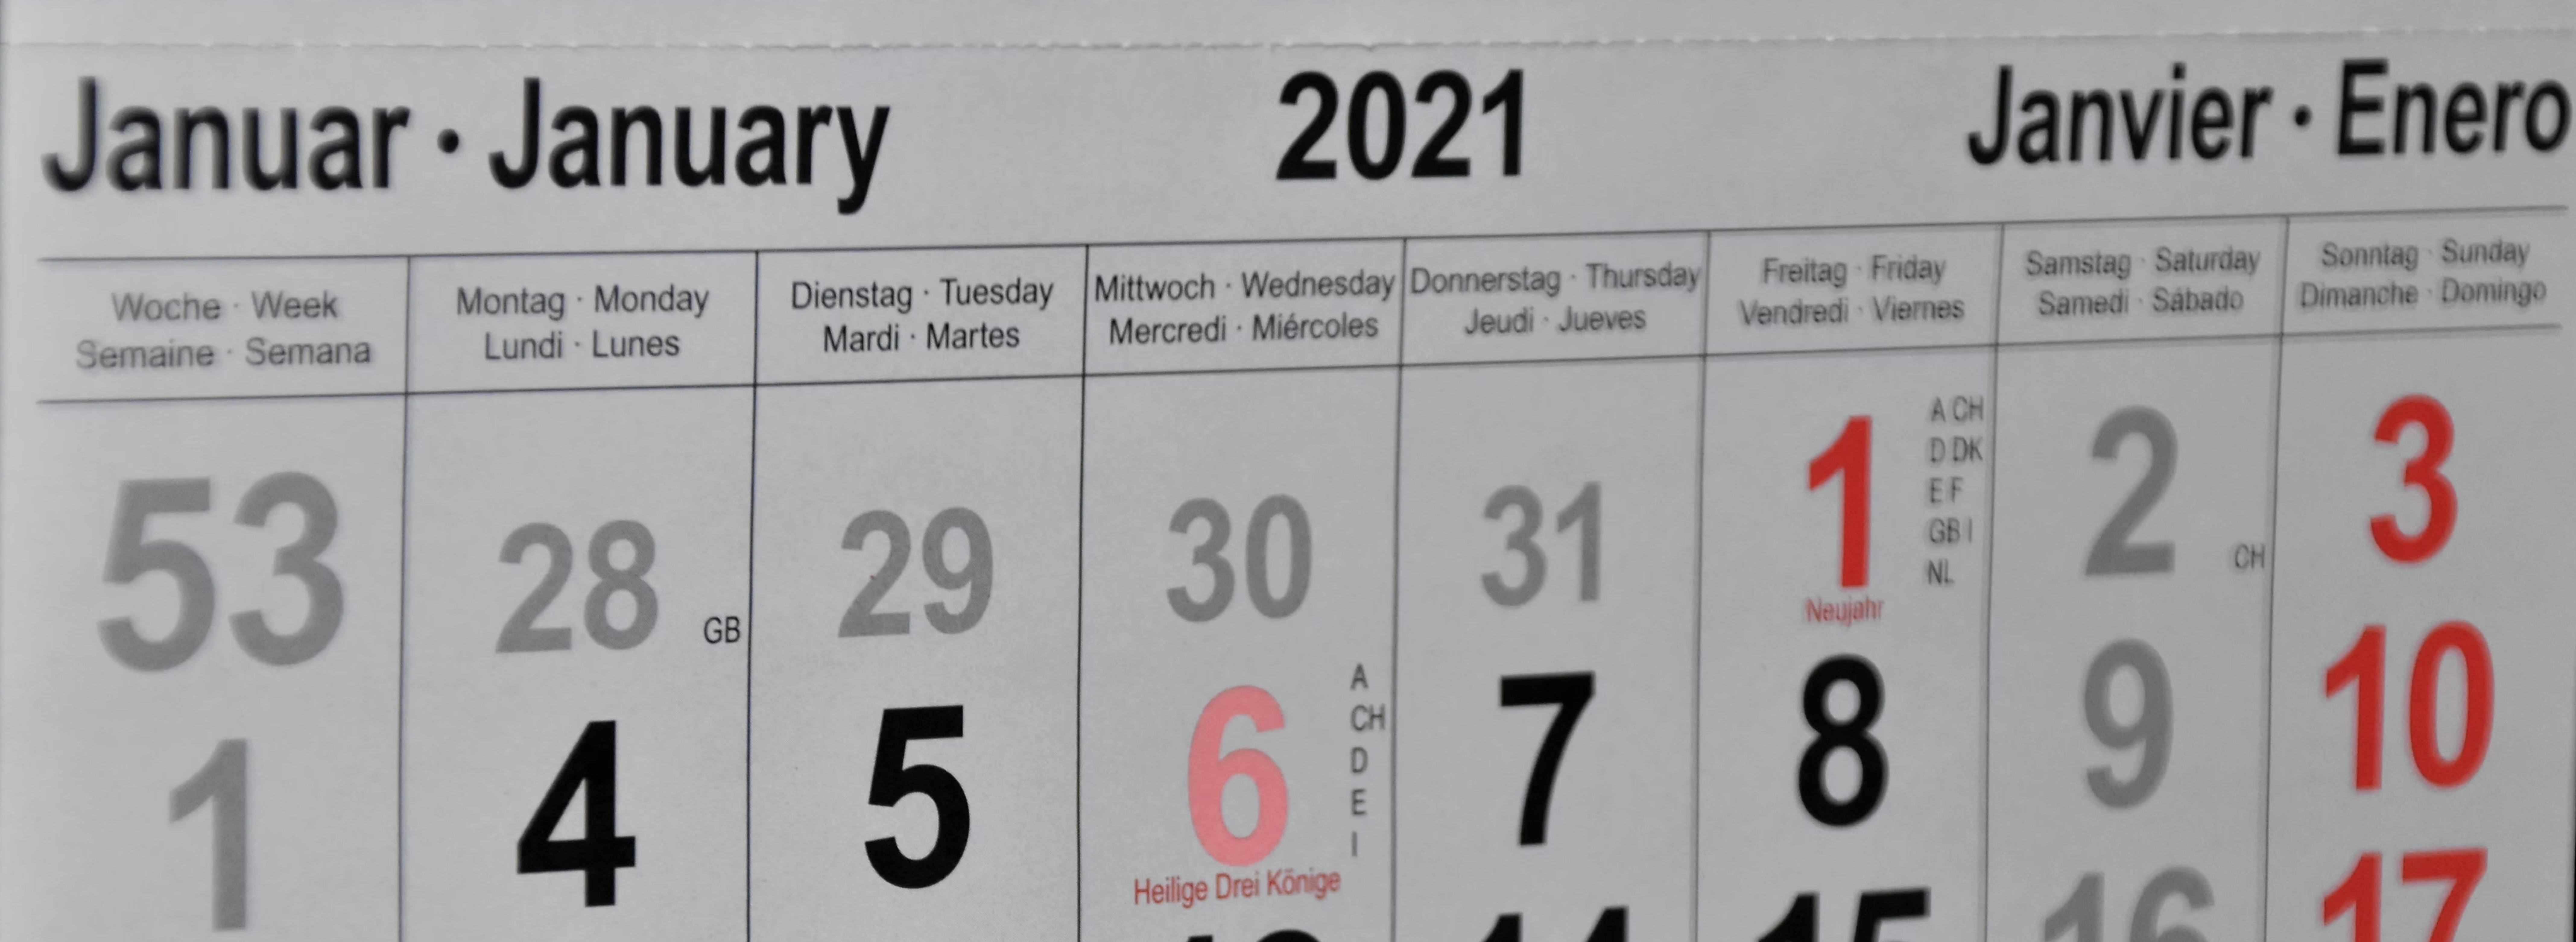 Das Bild zeigt ein Kalenderblatt vom Jahr 2021